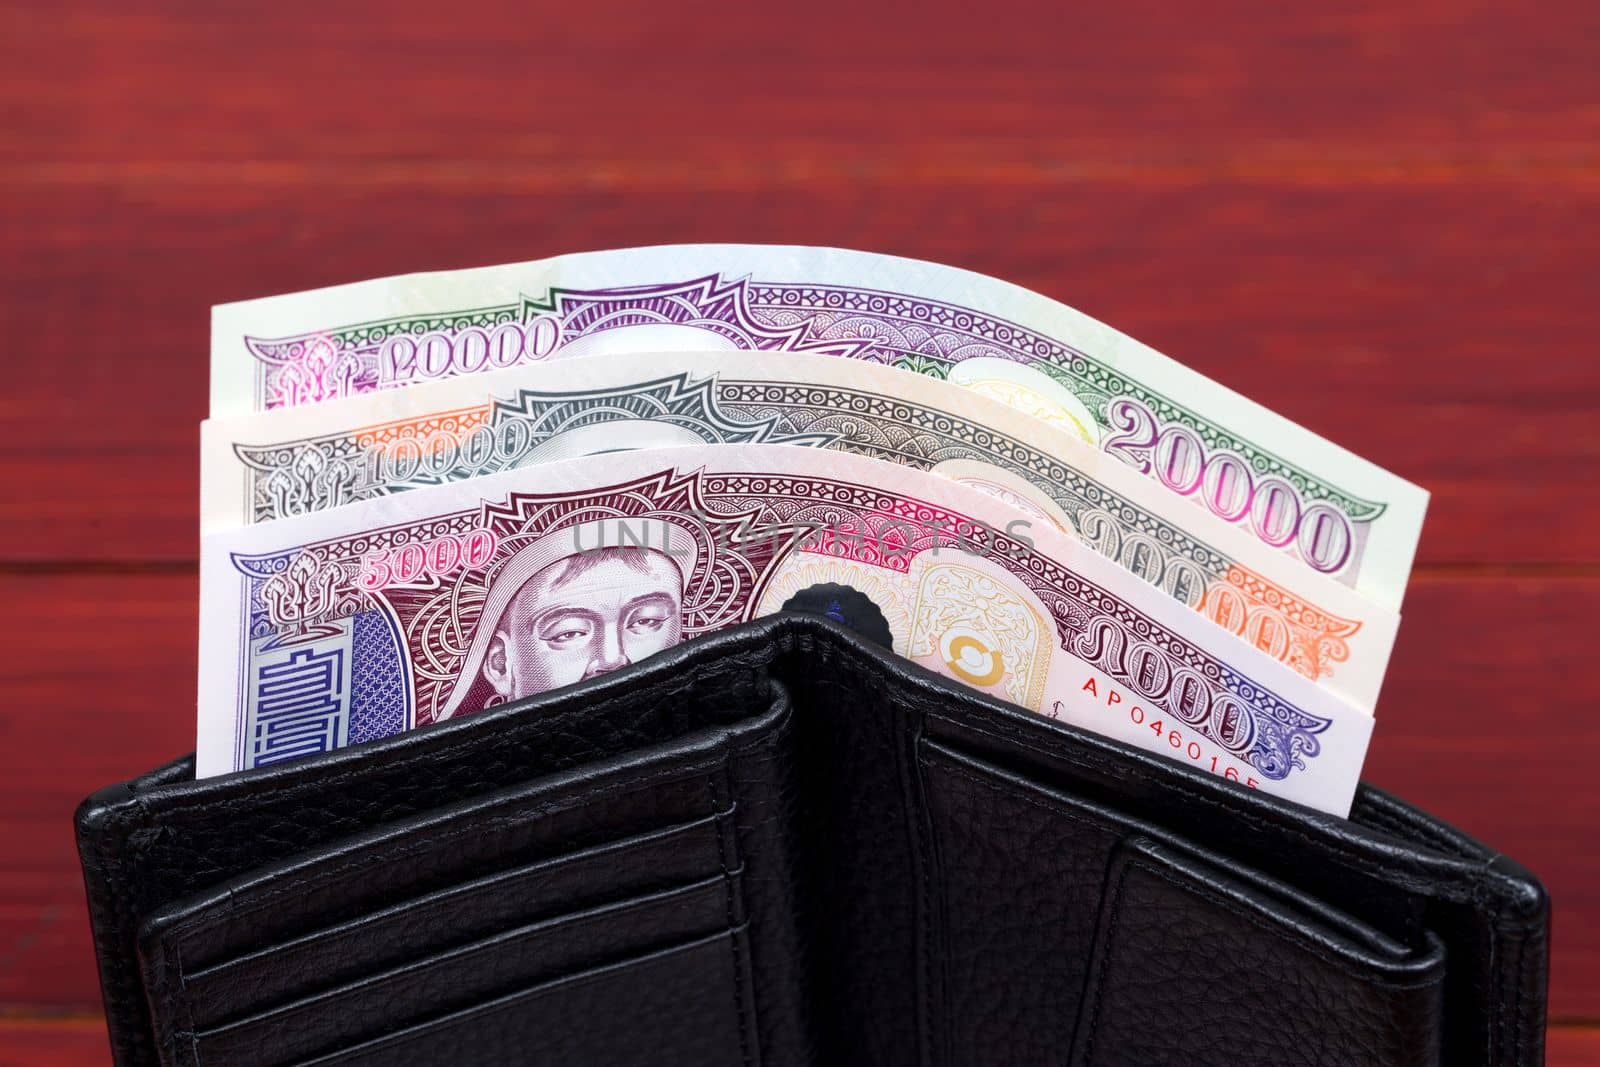 Mongolian money in the black wallet by johan10